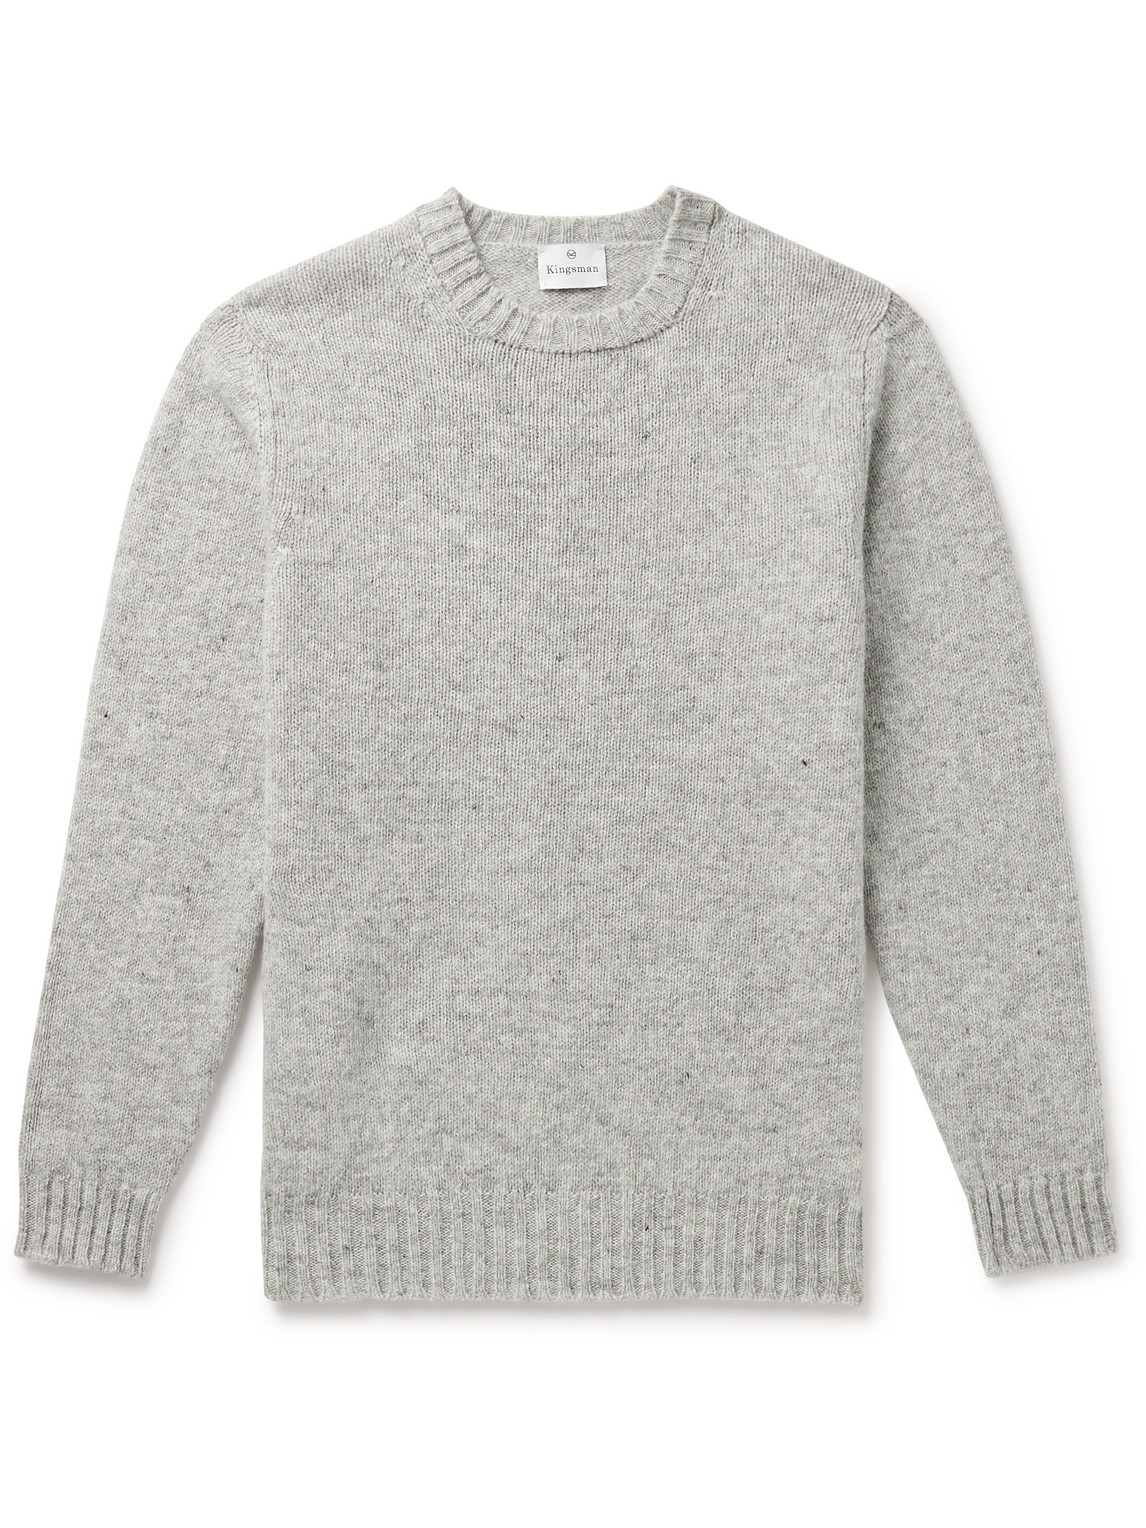 Kingsman Shetland Wool Sweater In Gray